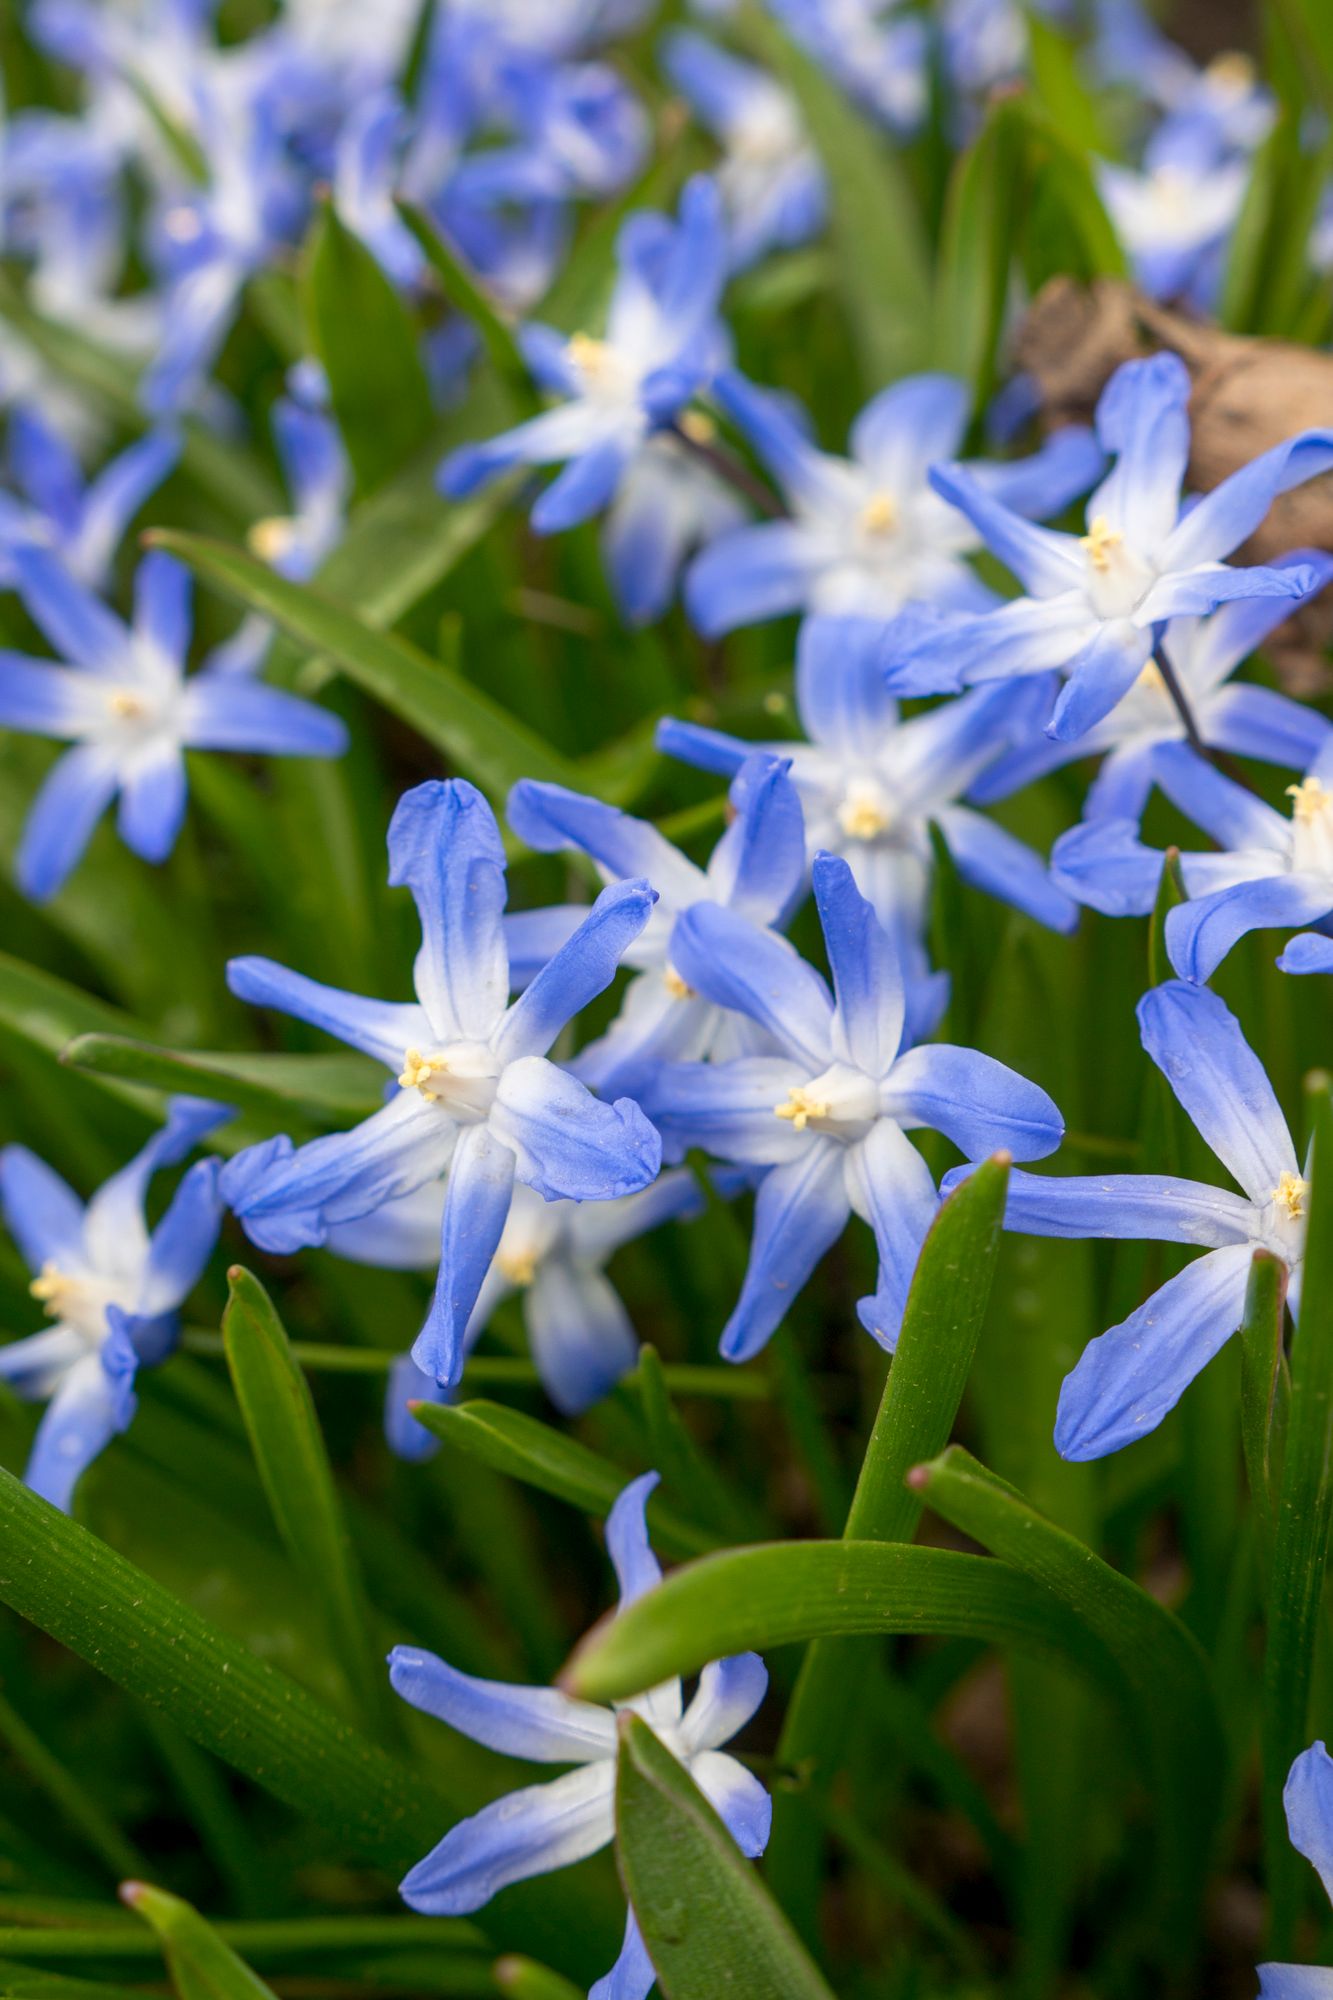 Kevättähdet ja posliinihyasintit nousevat nurmikon joukosta näyttävinä sinivalkoisina kukkatuppaina. Joskus nämä sipulikukat leviävät puutarhasta myös pientareen puolelle. 